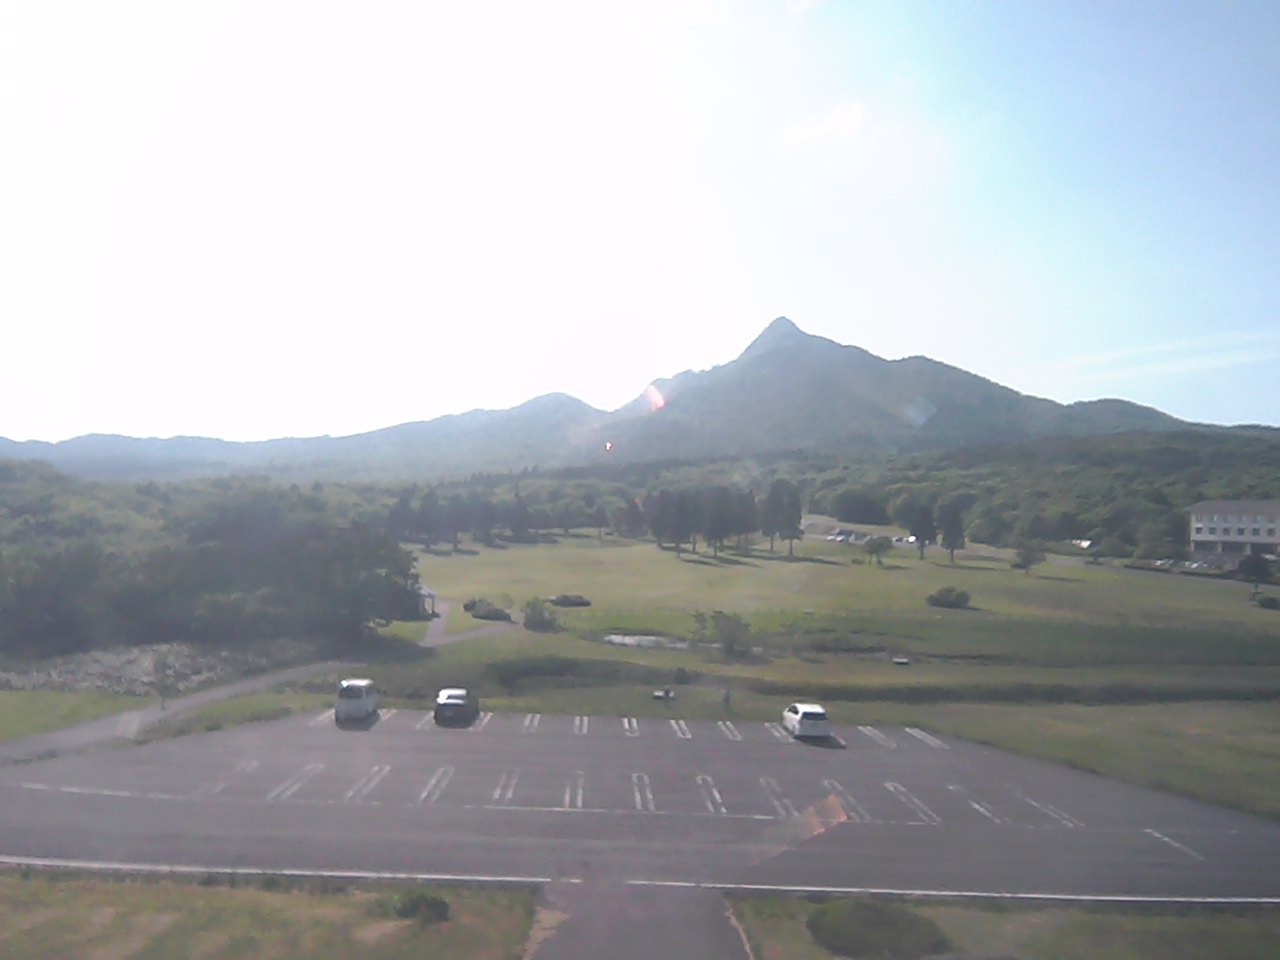 Mt. Karasugasen as viewed from Kagamiganaru in Mt. Daisen